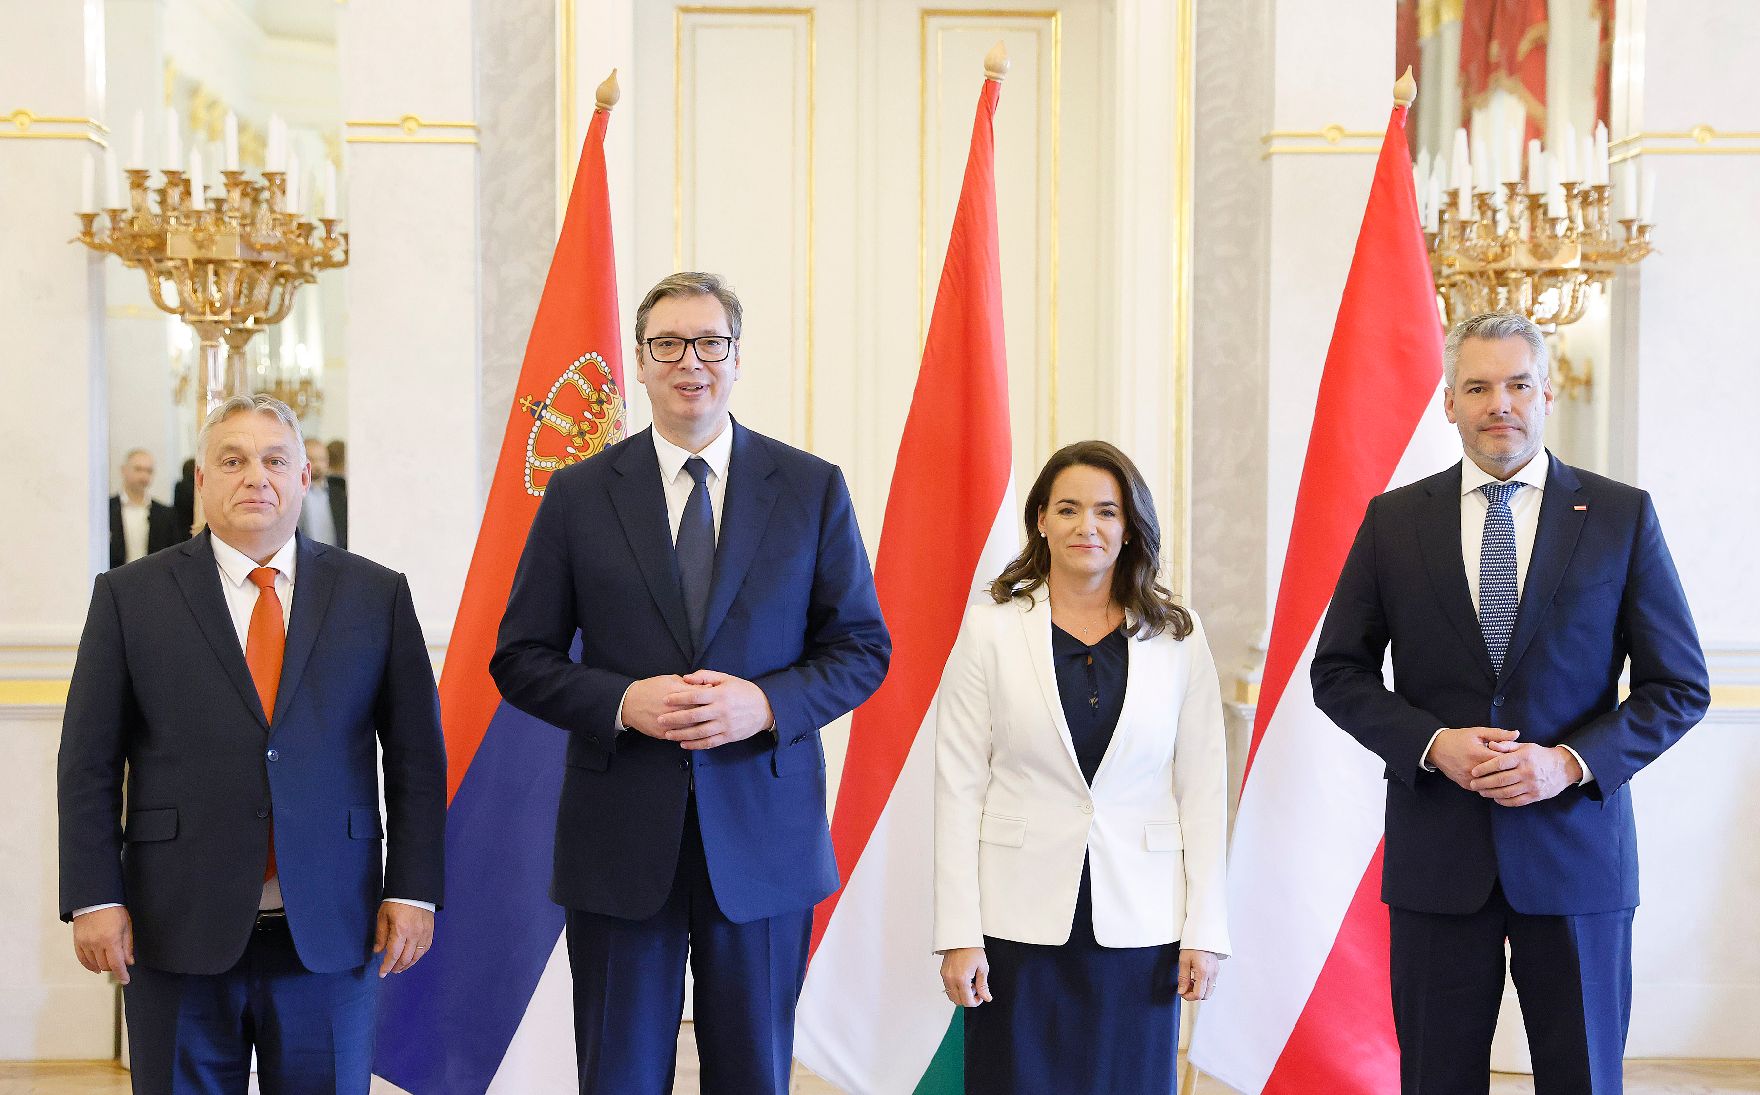 Am 3. Oktober 2022 nahm Bundeskanzler Karl Nehammer (r.) an der Migrationskonferenz in Budapest teil. Im Bild mit dem ungarischen Premierminister Viktor Orban (l.) und dem serbischen Präsidenten Aleksandar Vucic (2.v.l.)und der ungarischen Präsidentin Katalin Novak (3.v.l.)